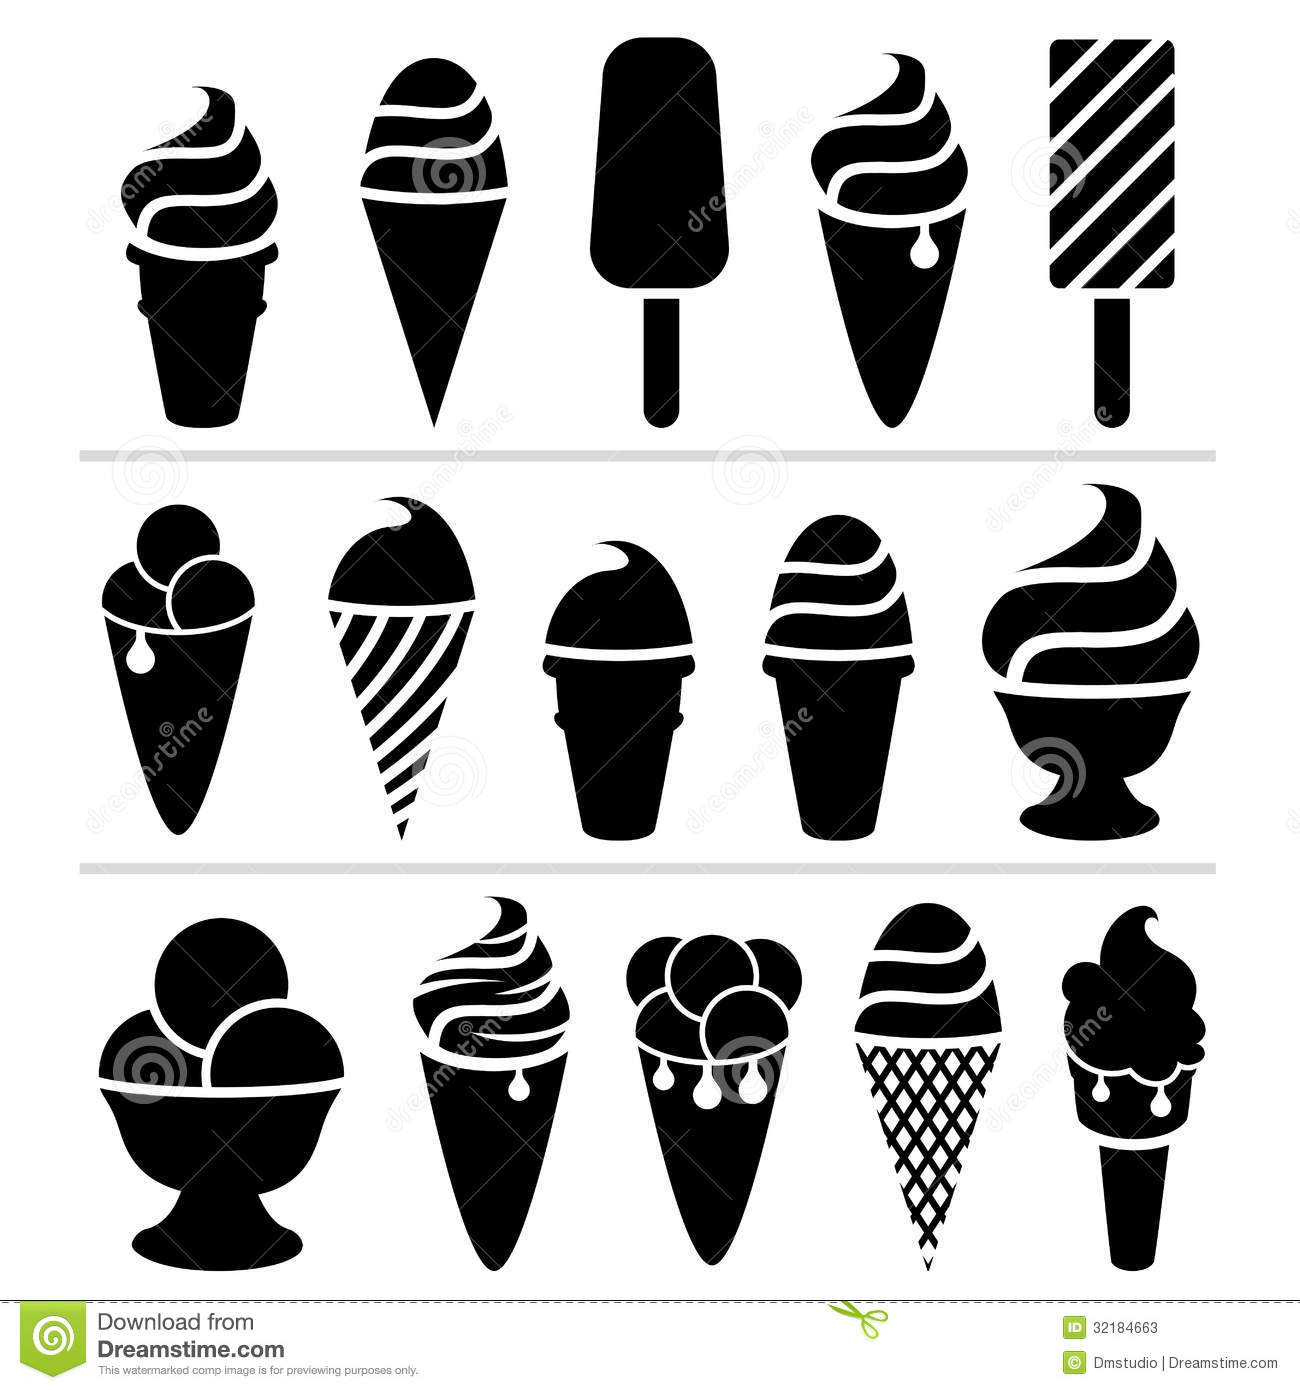 Ice cream Icons - 2,228 free vector icons